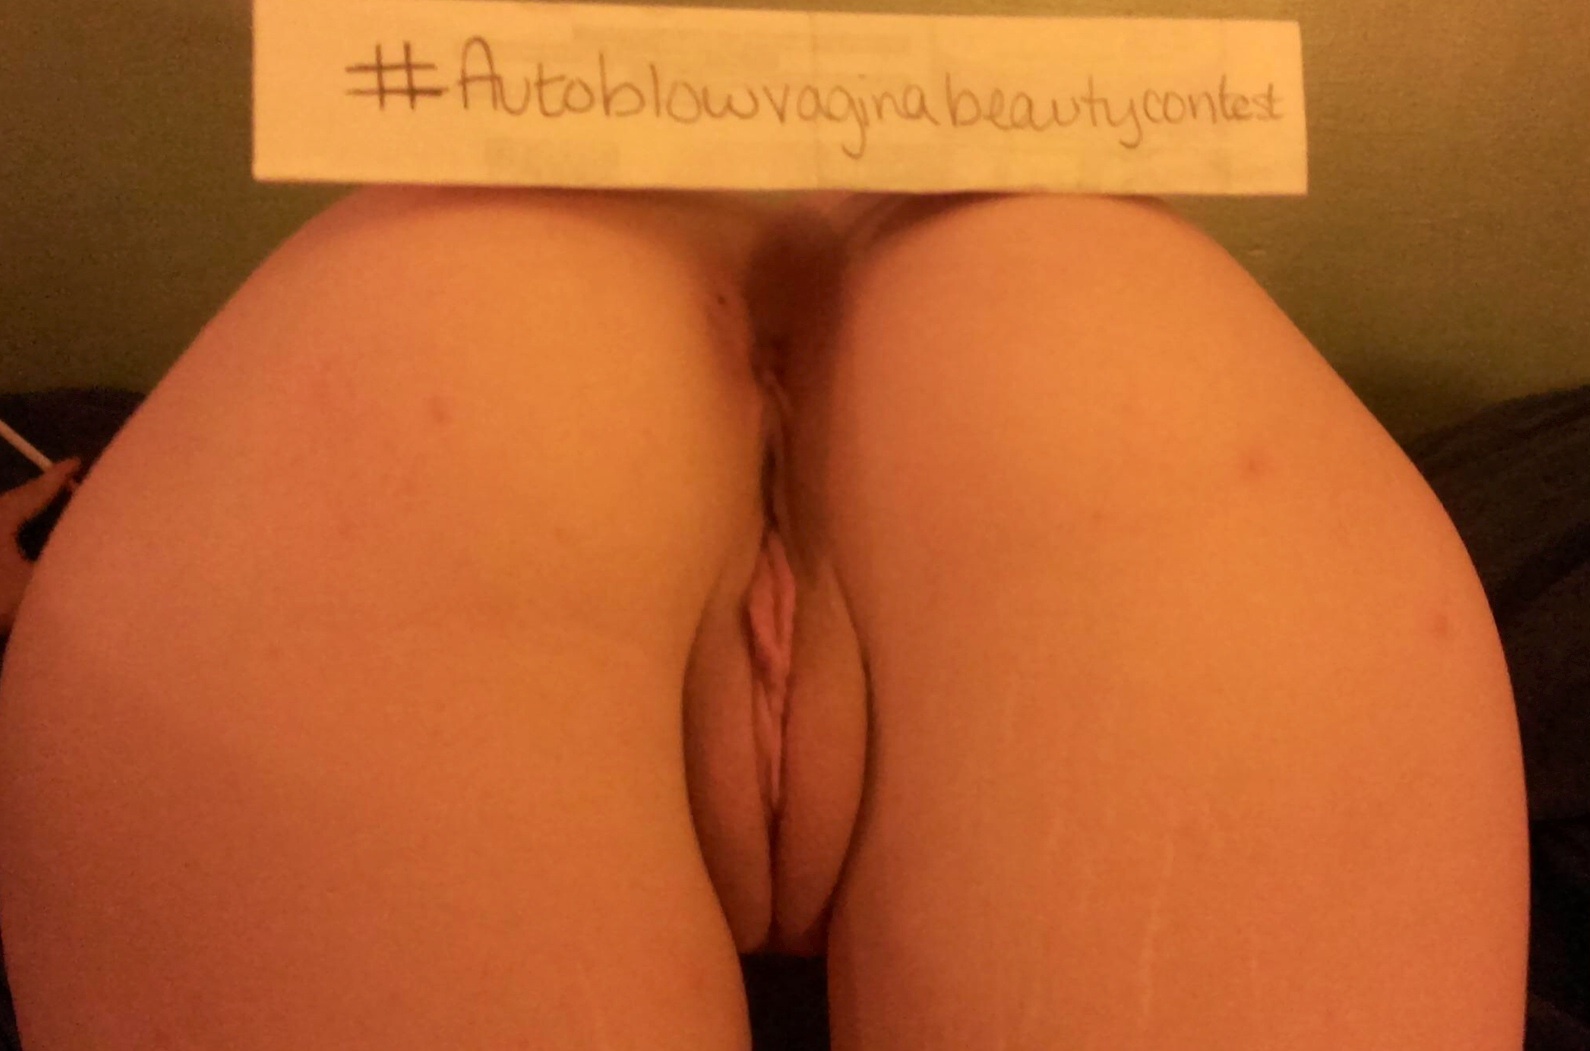 abdul aziz arqam reccomend autoblow vagina contest winner pic